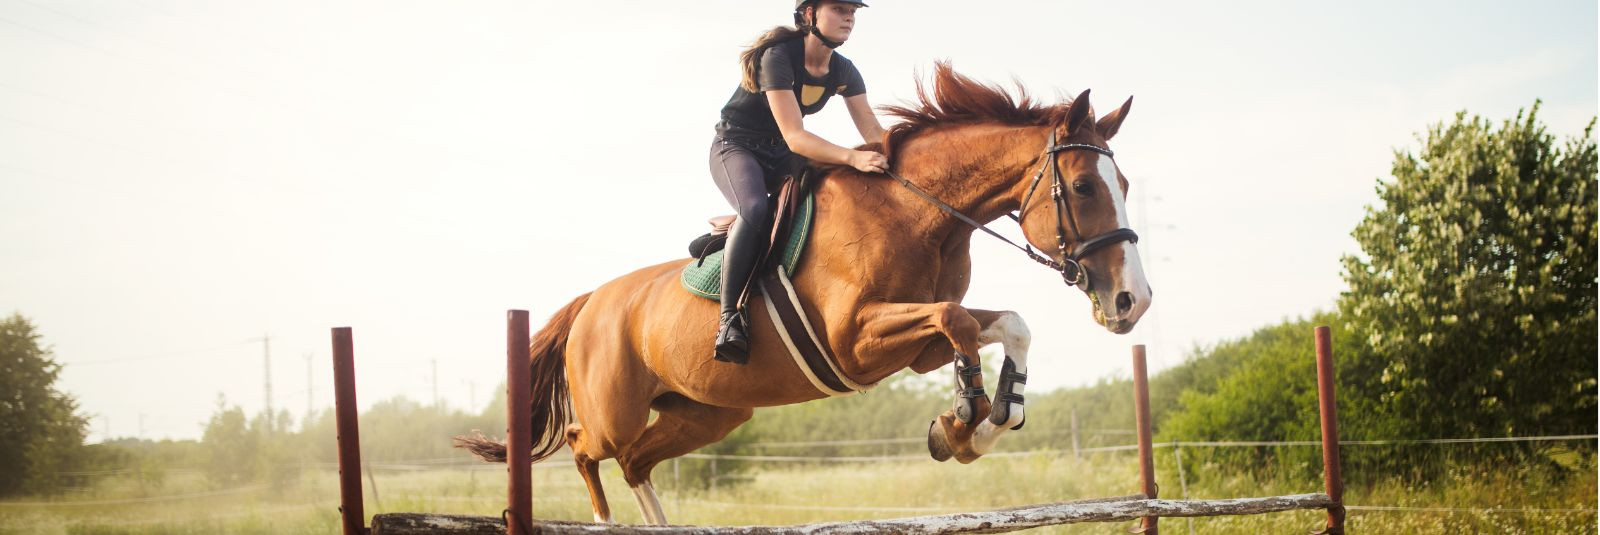 Kui hobused ja ratsutamine on sinu kirg, siis tere tulemast Vooremaa Ratsakeskusse, kus me ühendame kirge ja hobuseid unustamatu kogemuse loomiseks. Oleme pühen